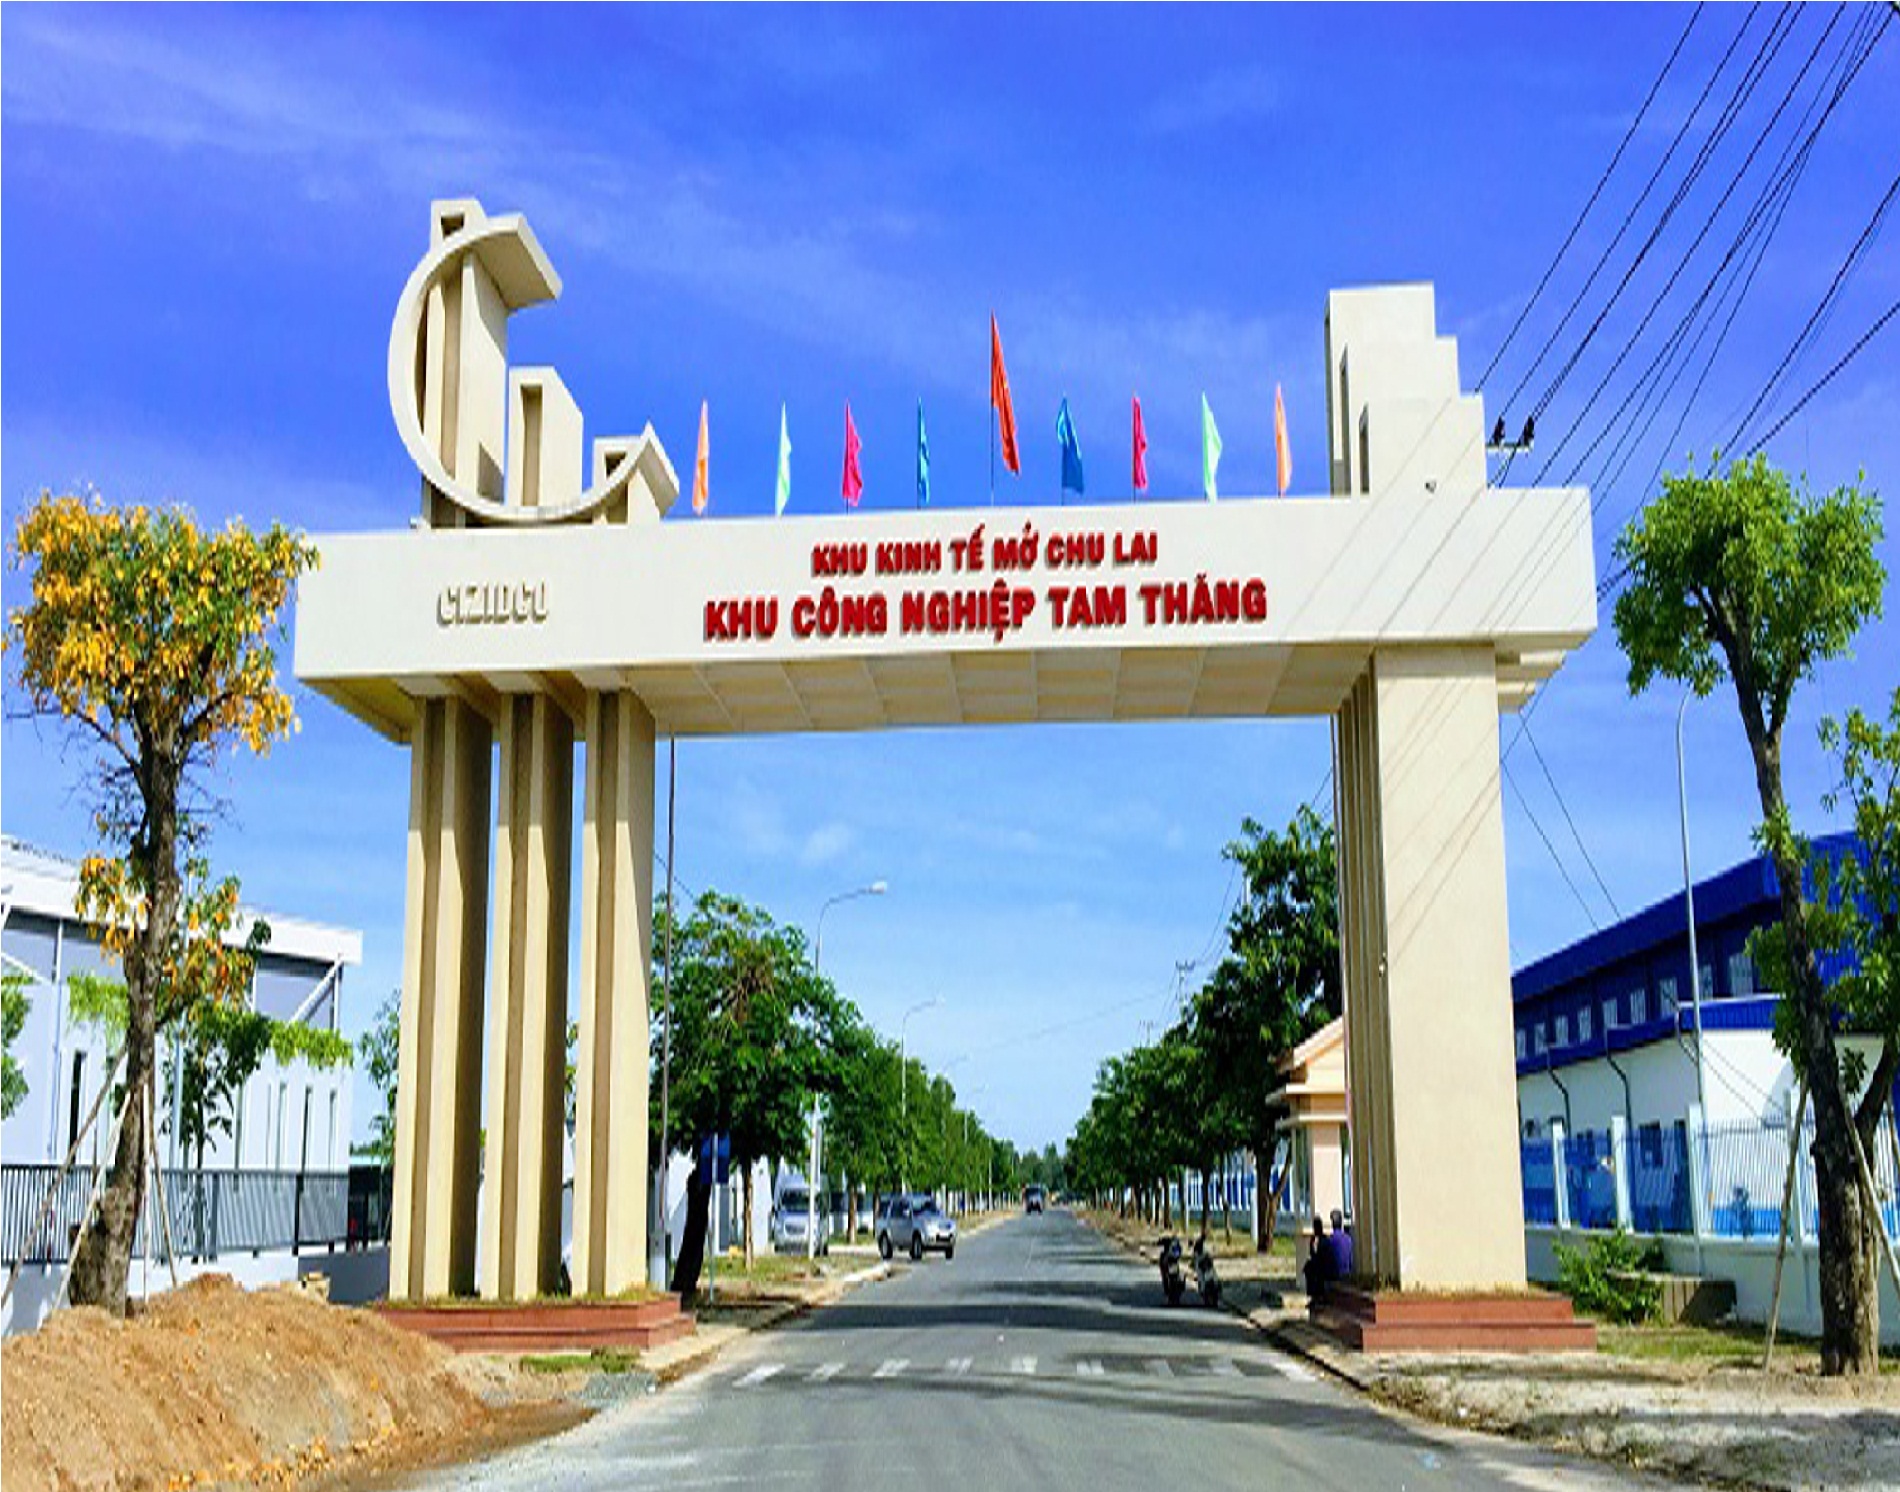 Công ty Phan Lê tiến hành bổ sung công nghệ, thiết bị của trạm xử lý nước thải tập trung tại KCN Tâm Thắng